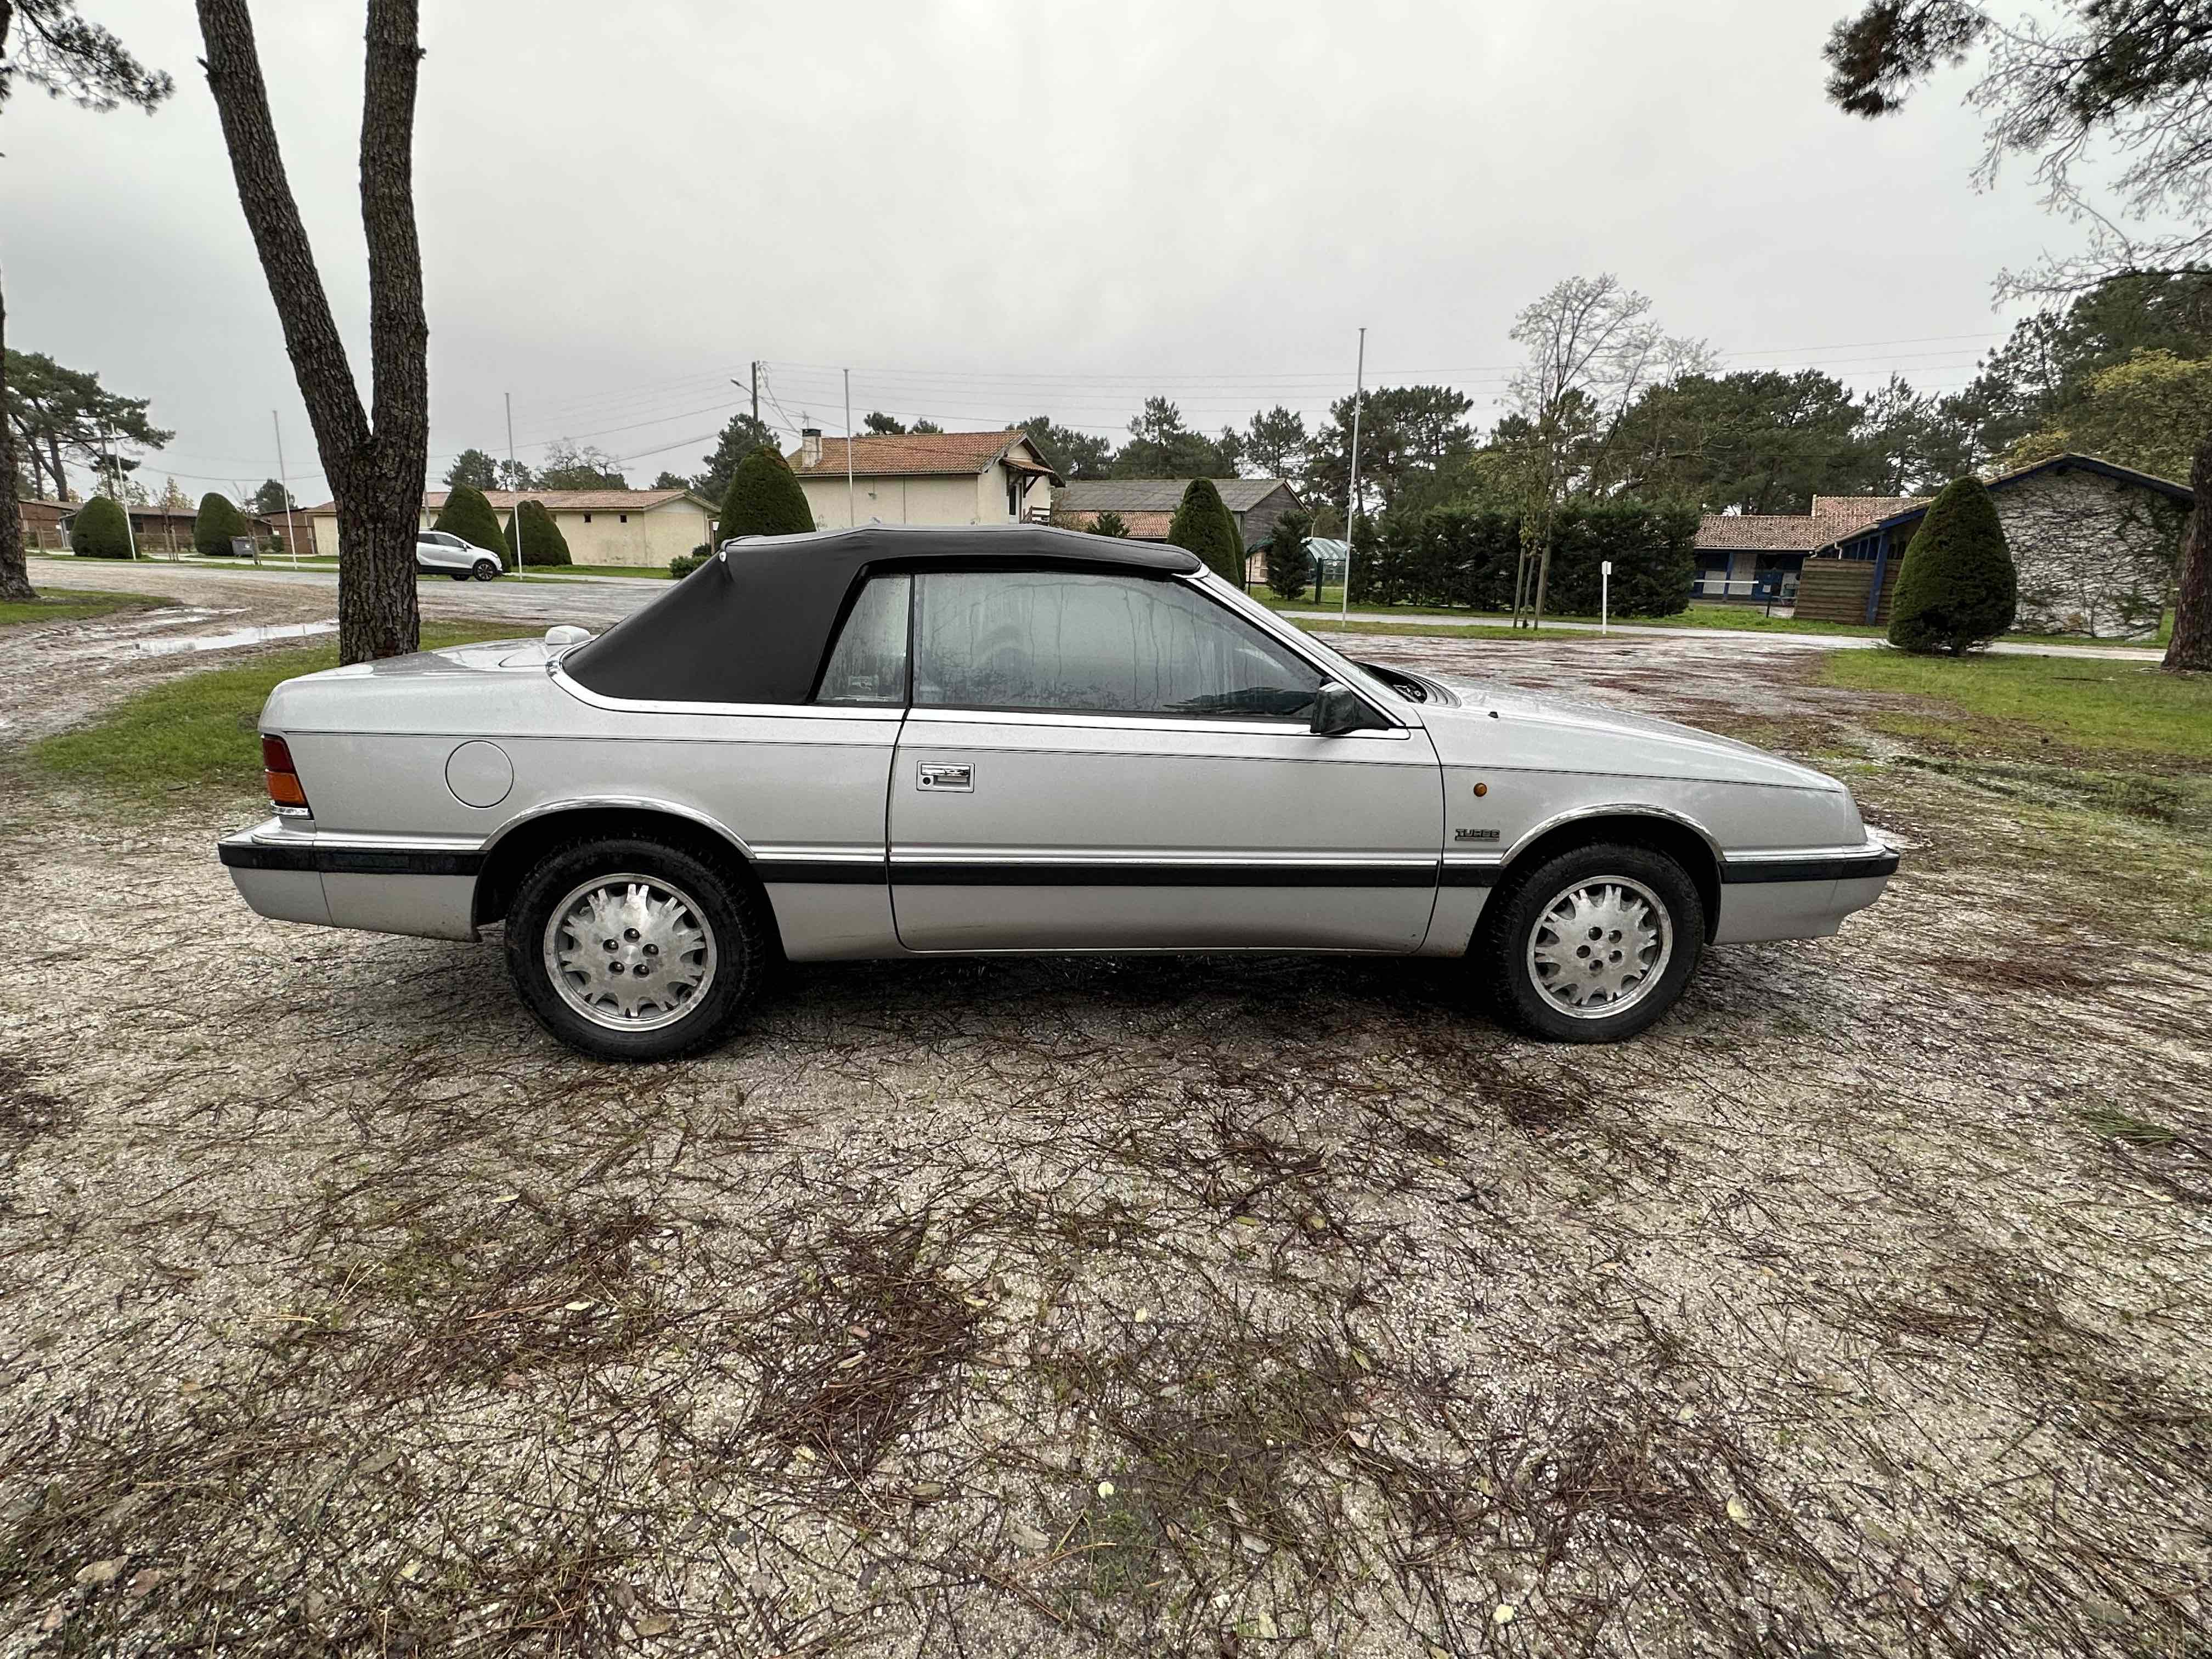 Chrysler Le Baron cabriolet de 1989 en 2L5 Turbo 152 CV boite auto CT OK 56000KMS 6500 euros